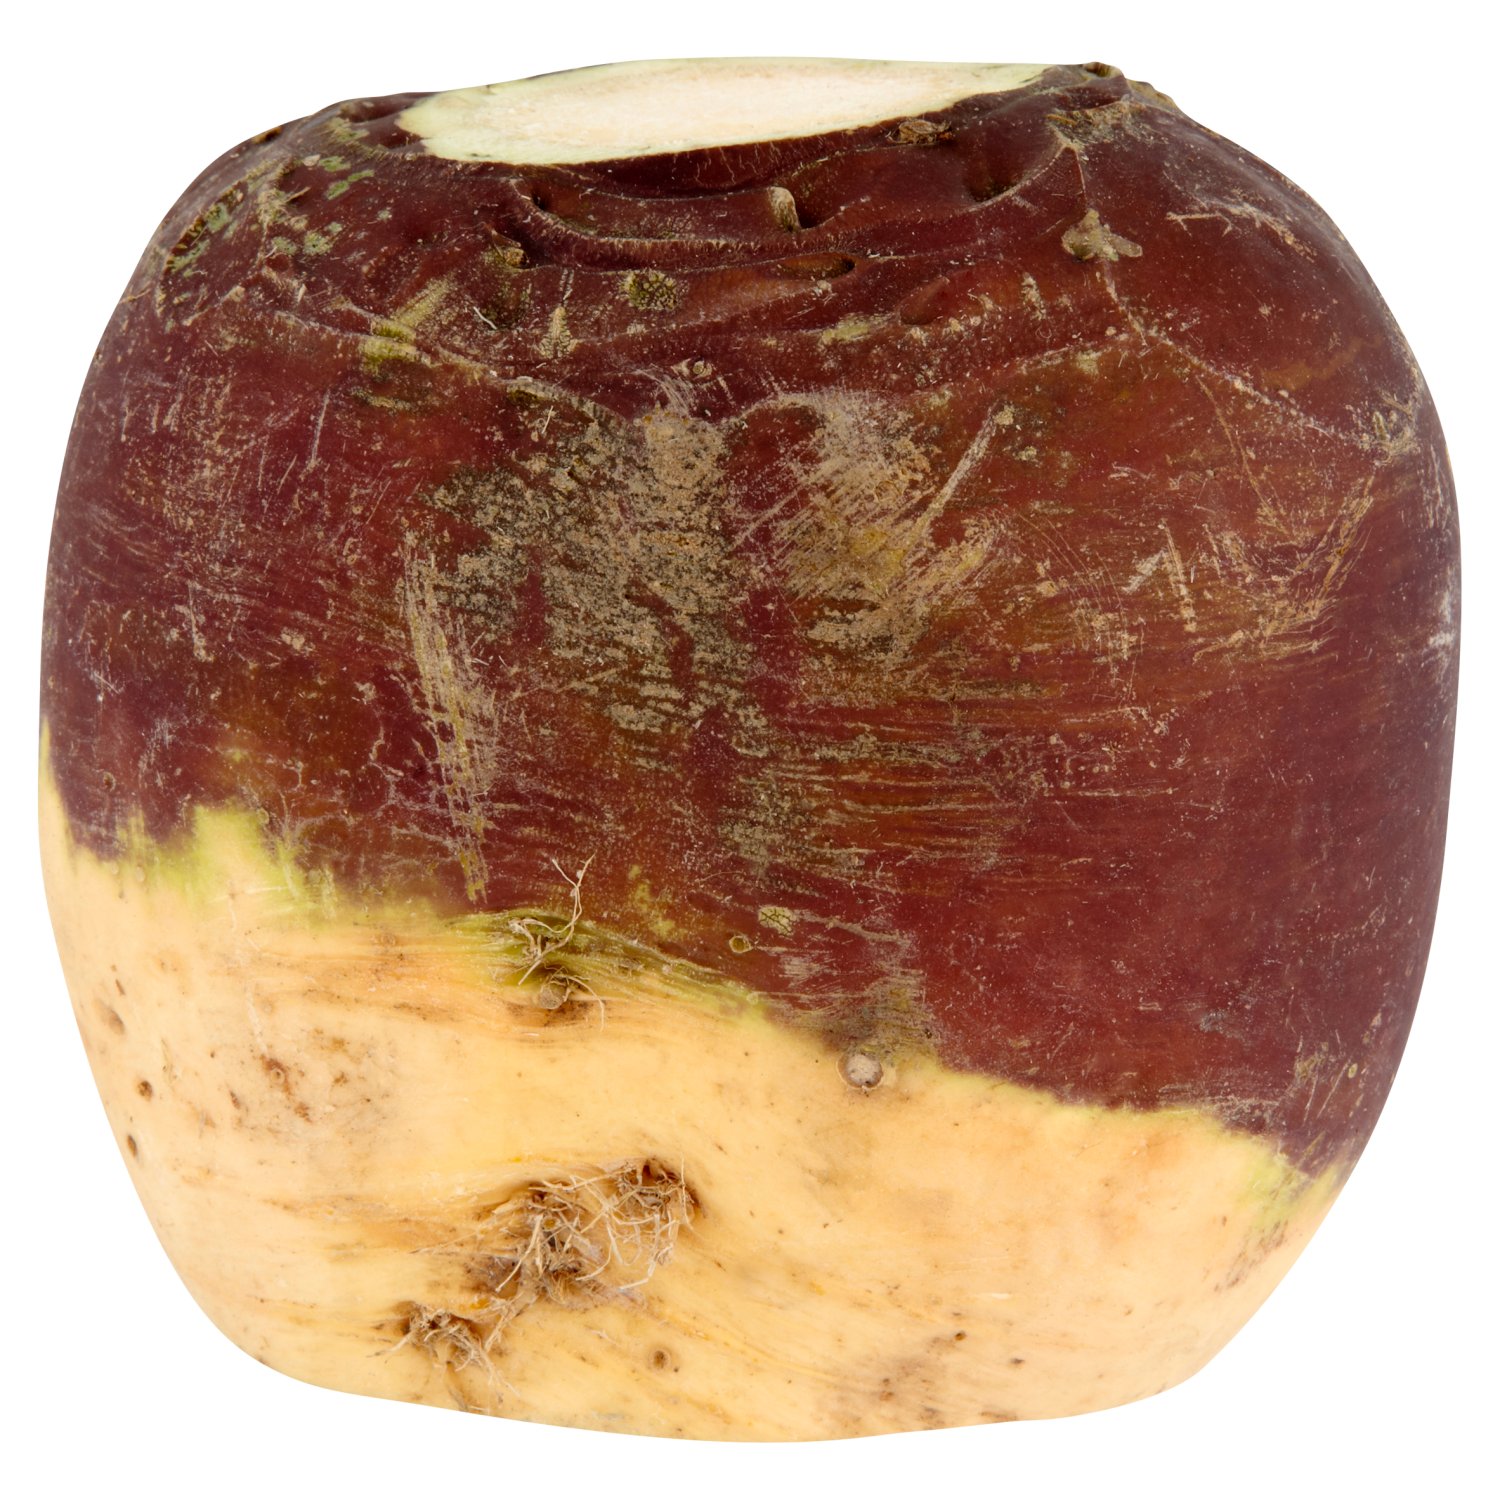 SuperValu Loose Turnip (1 Piece)